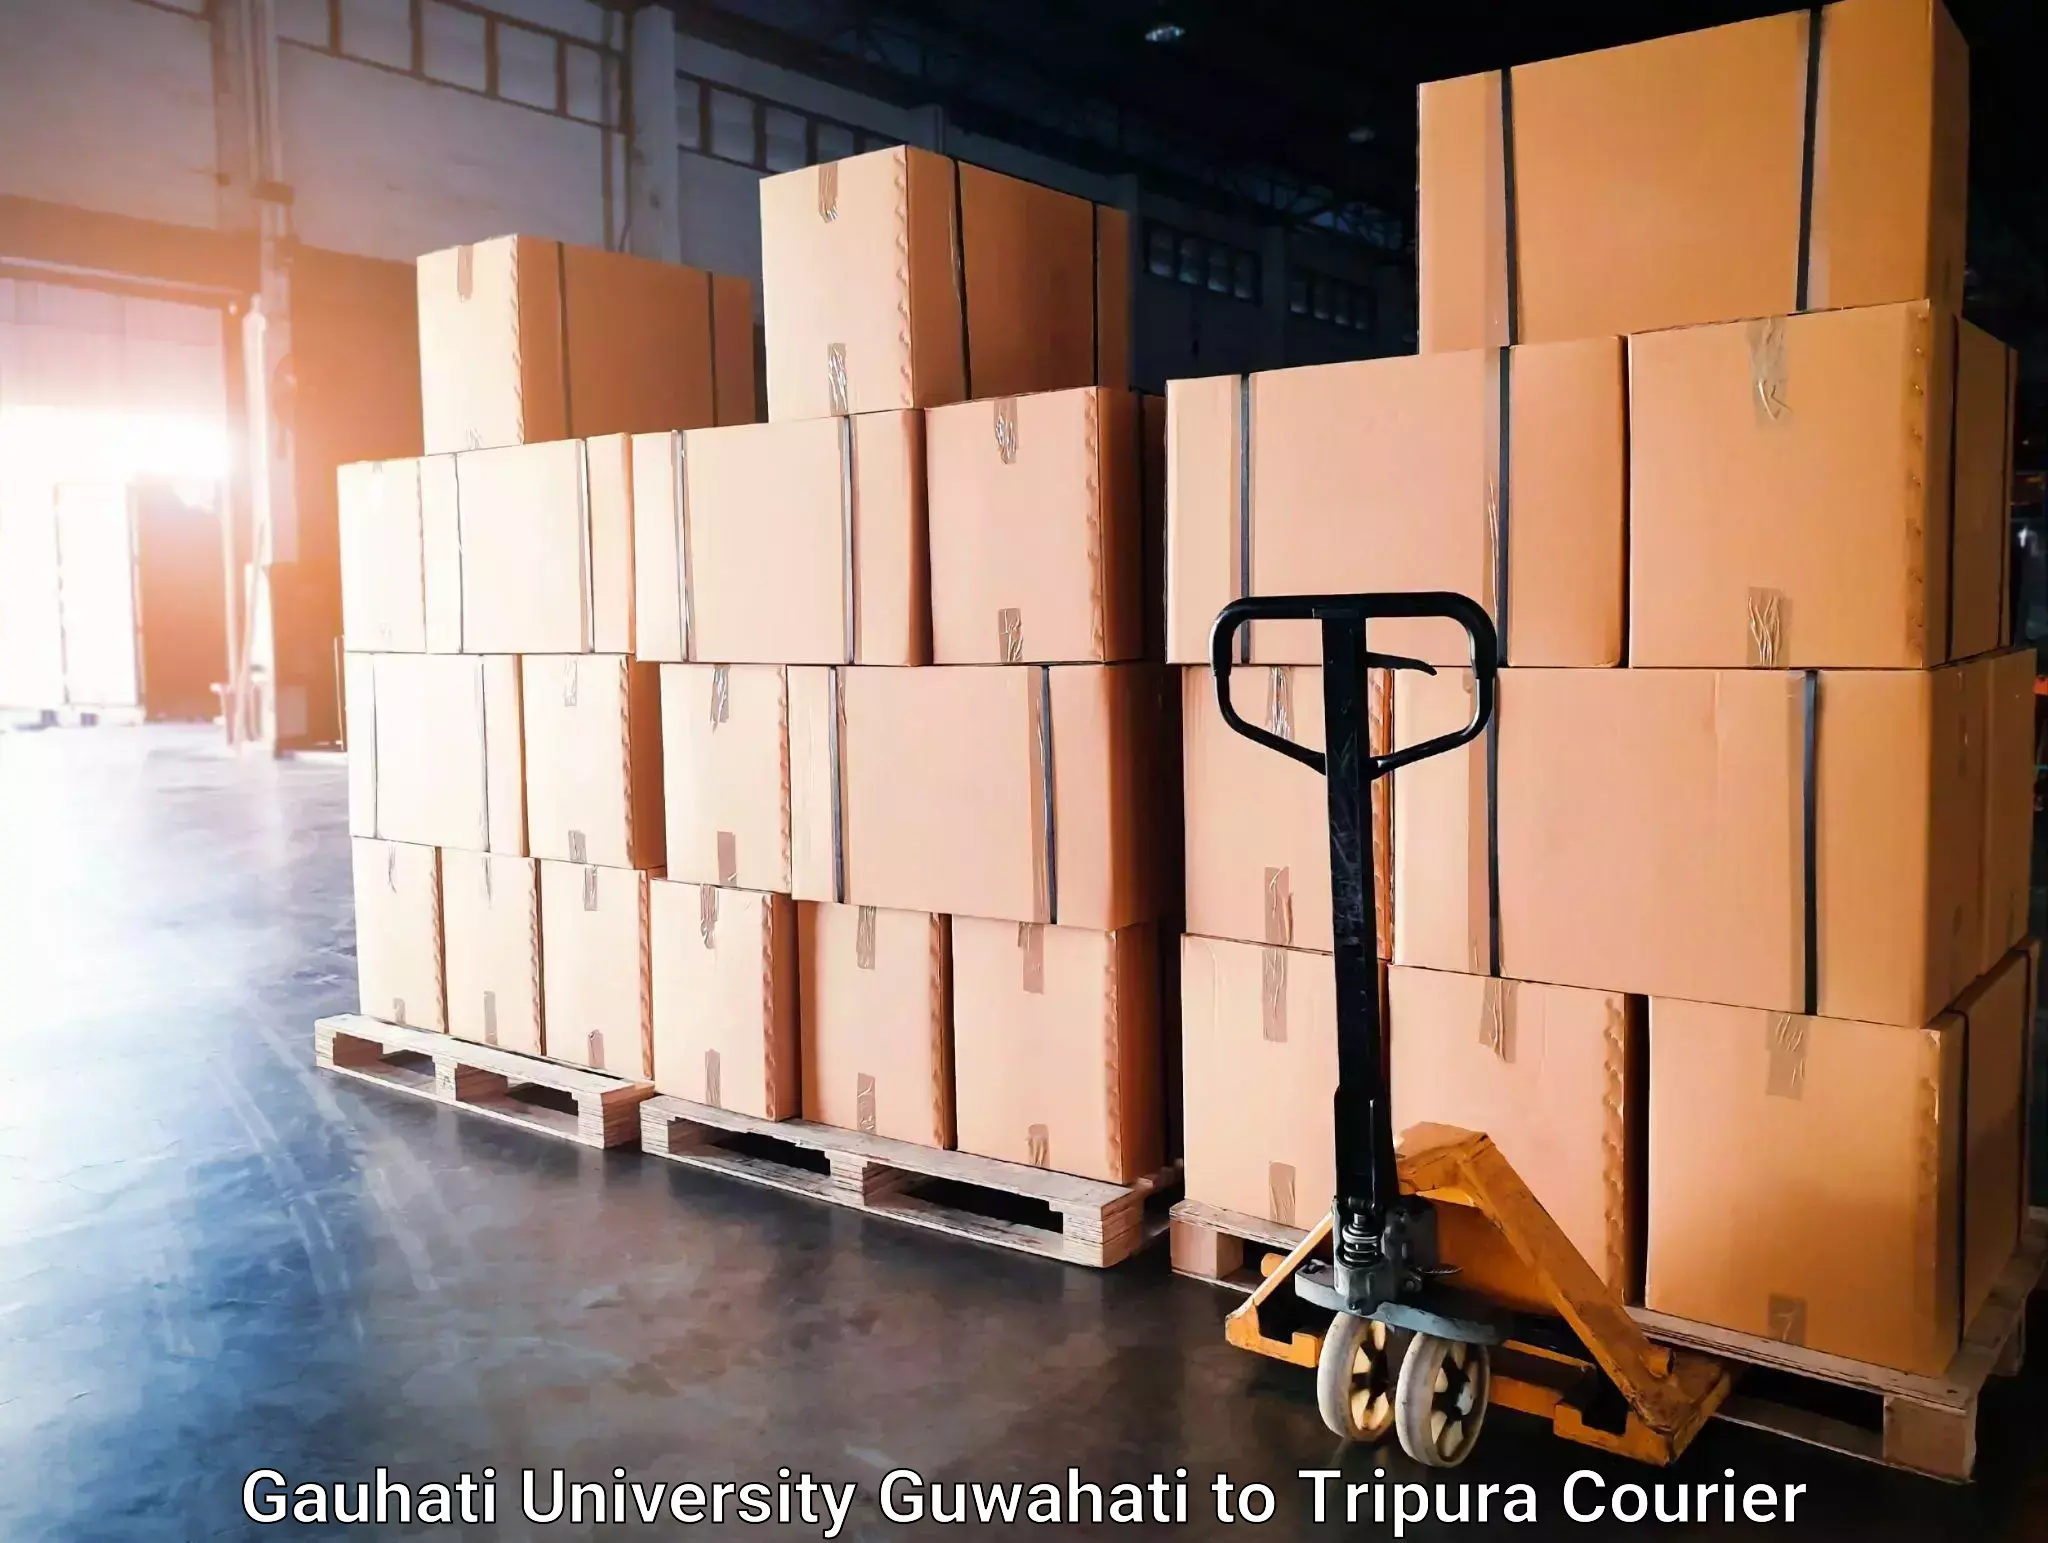 Express delivery capabilities Gauhati University Guwahati to Bishalgarh